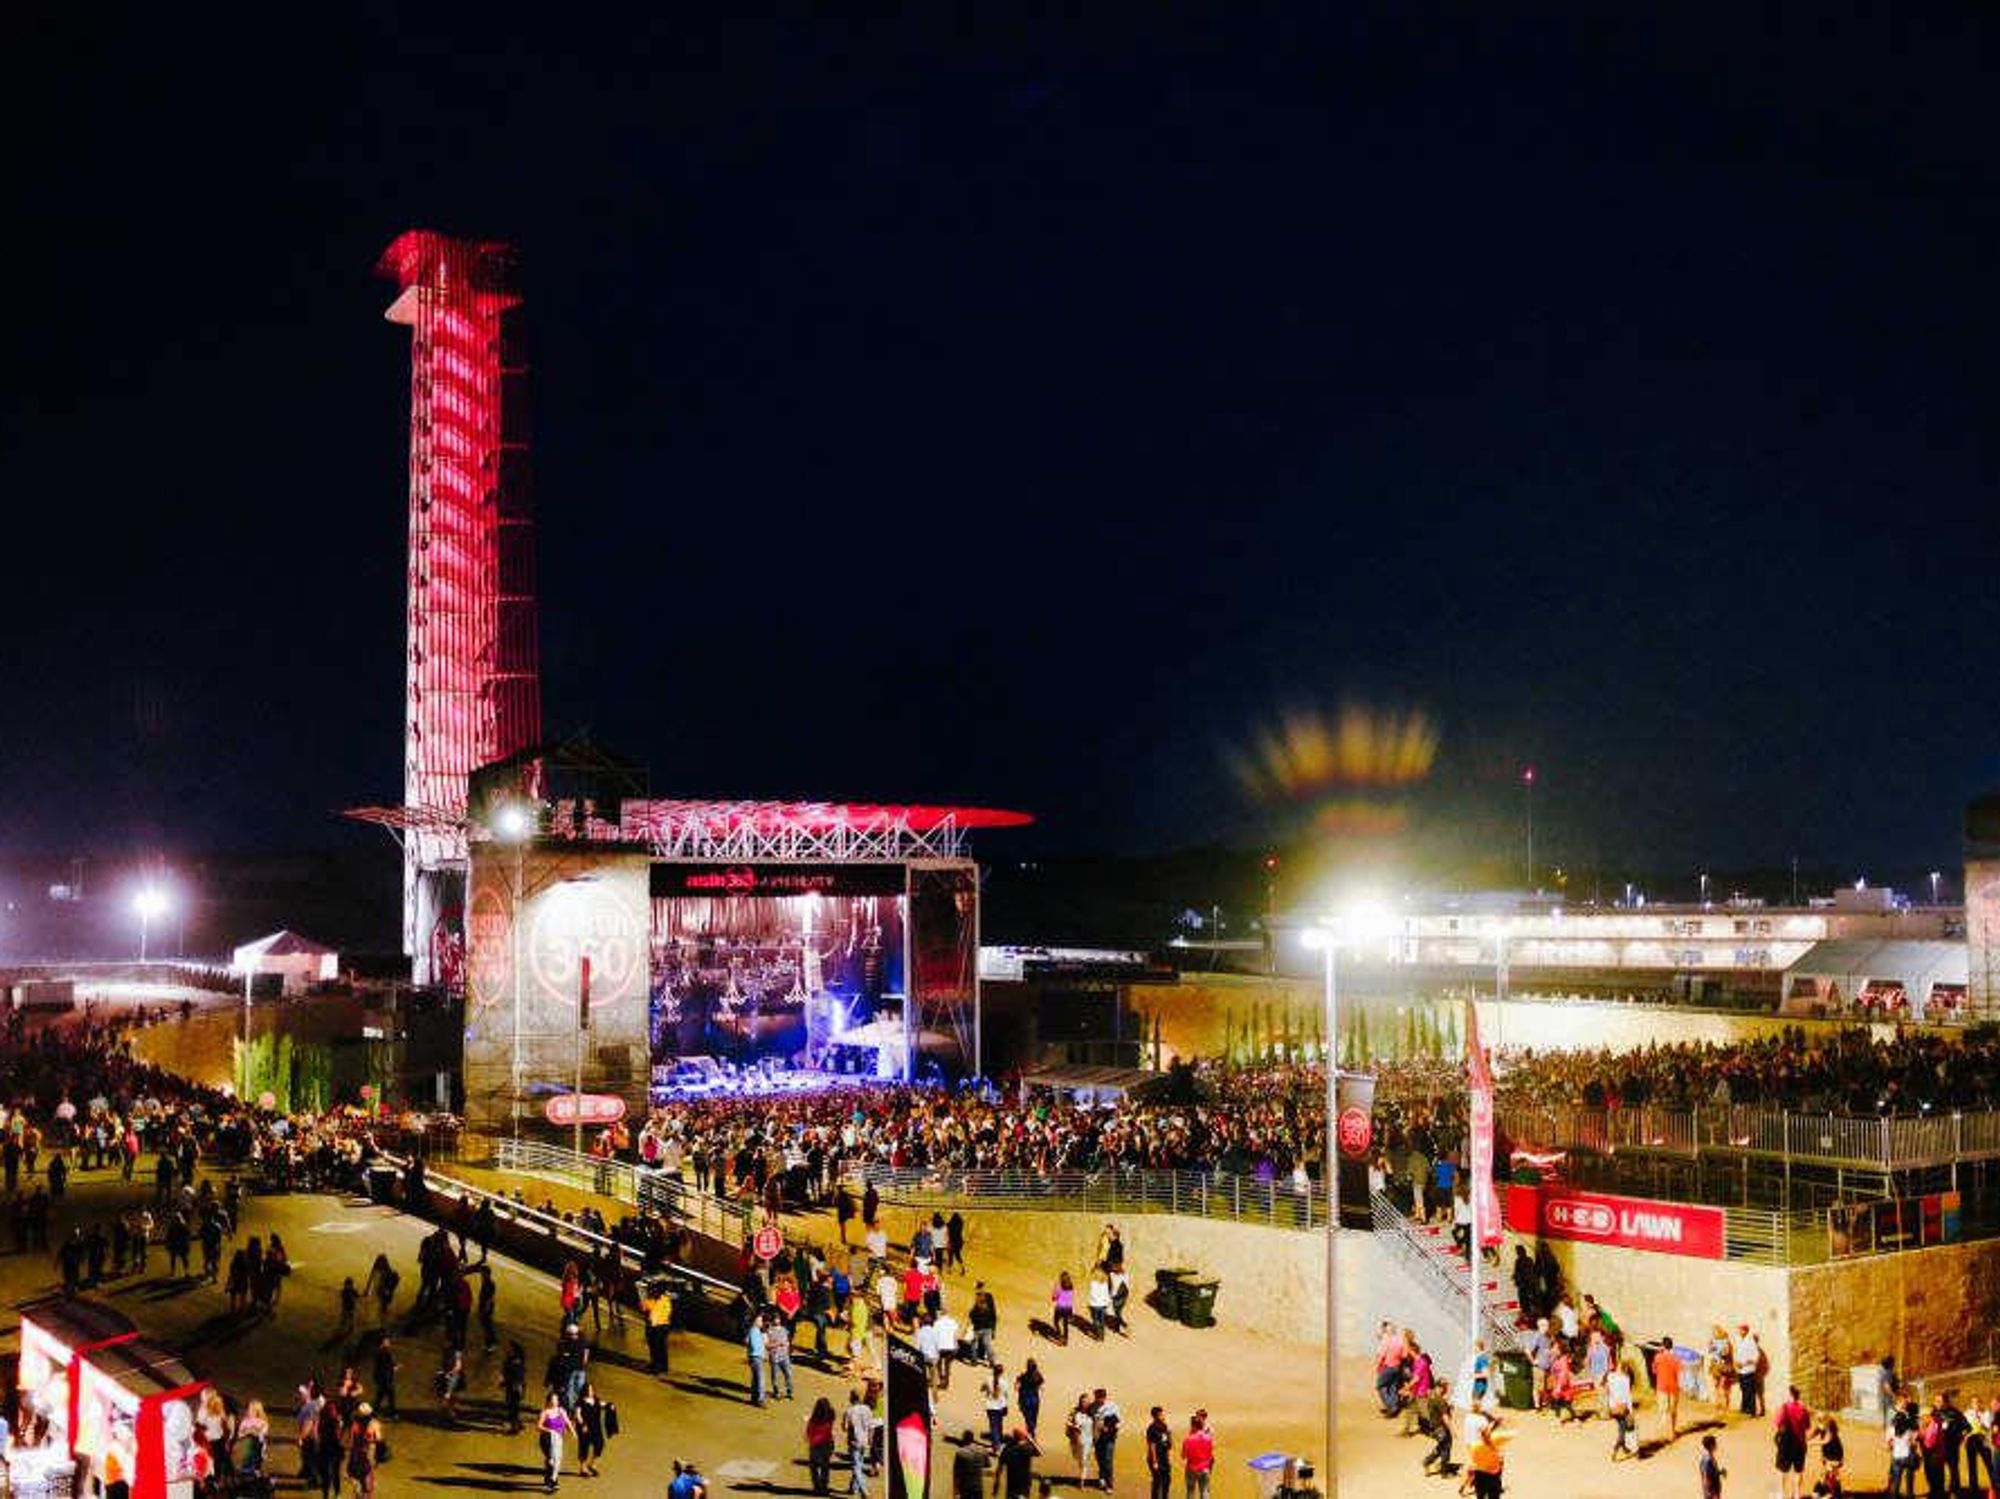 Lumineers play Austin360 Amphitheater